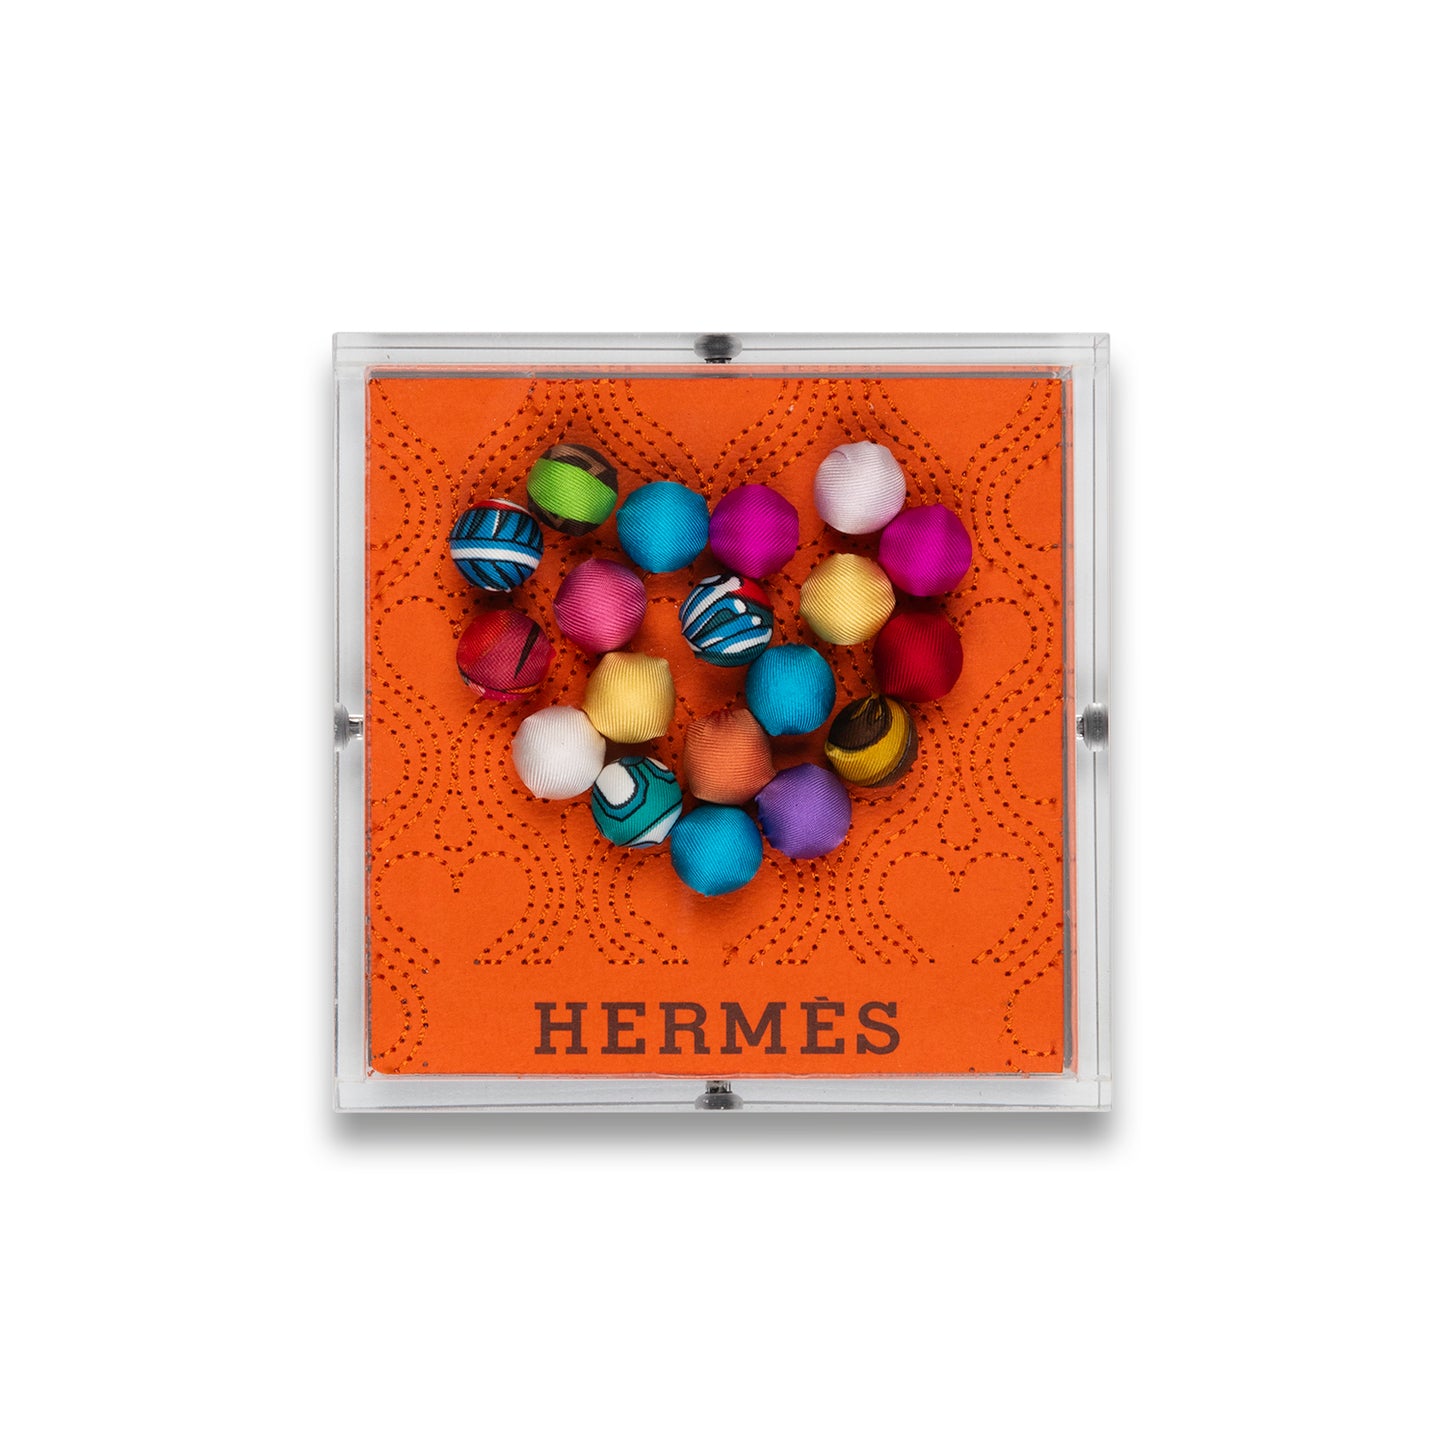 Petite Hermes Pom-Pom Heart by Stephen Wilson (5x5x2")